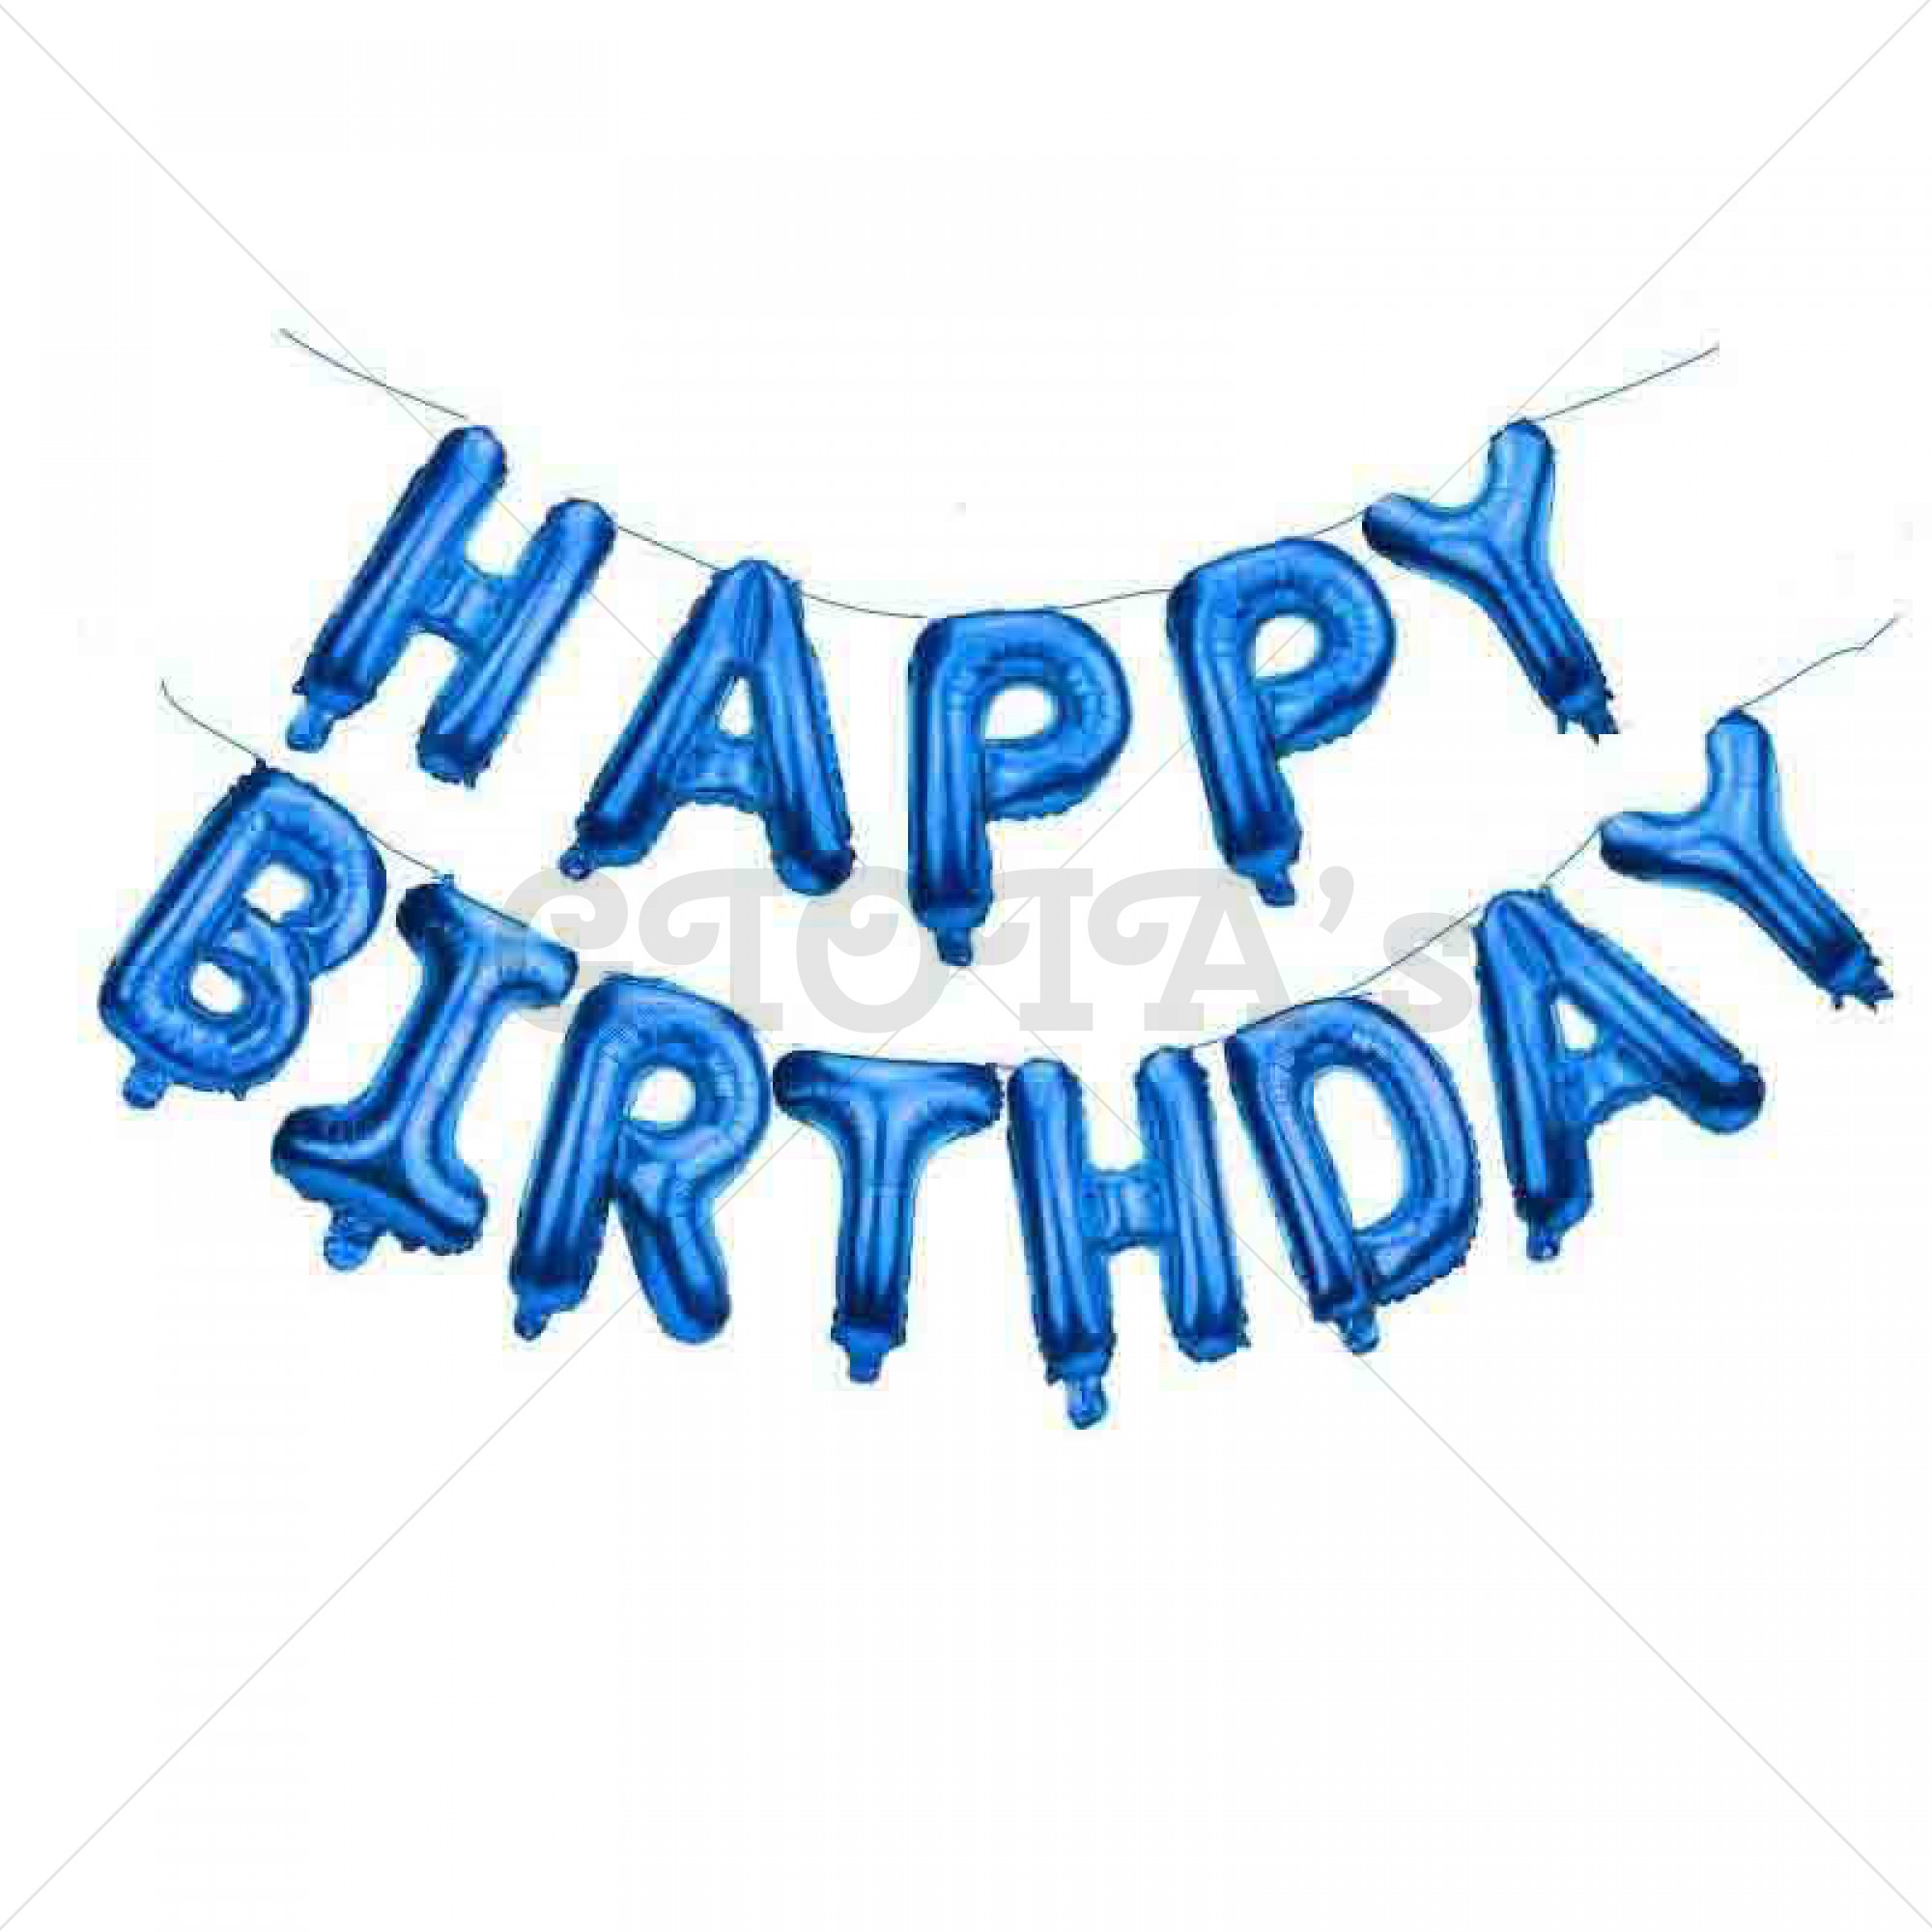 Folie ballon - Happy Birthday letters jongen 40 cm hoog - GIOIA's cadeau feestartikelen